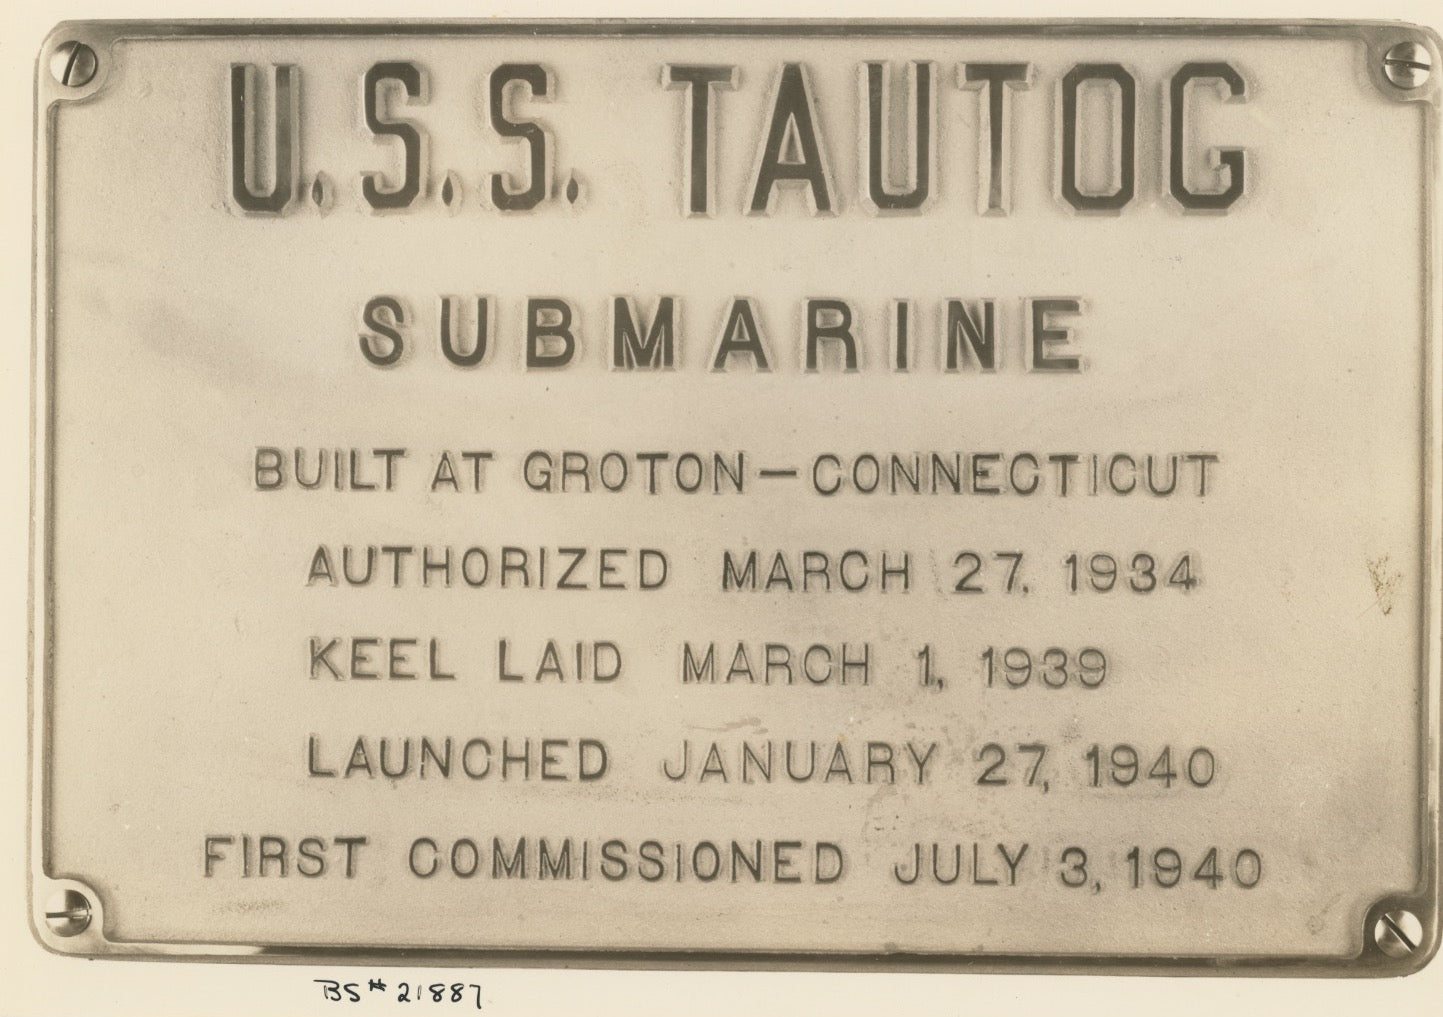 USS Tautog (SS-199) Submarine